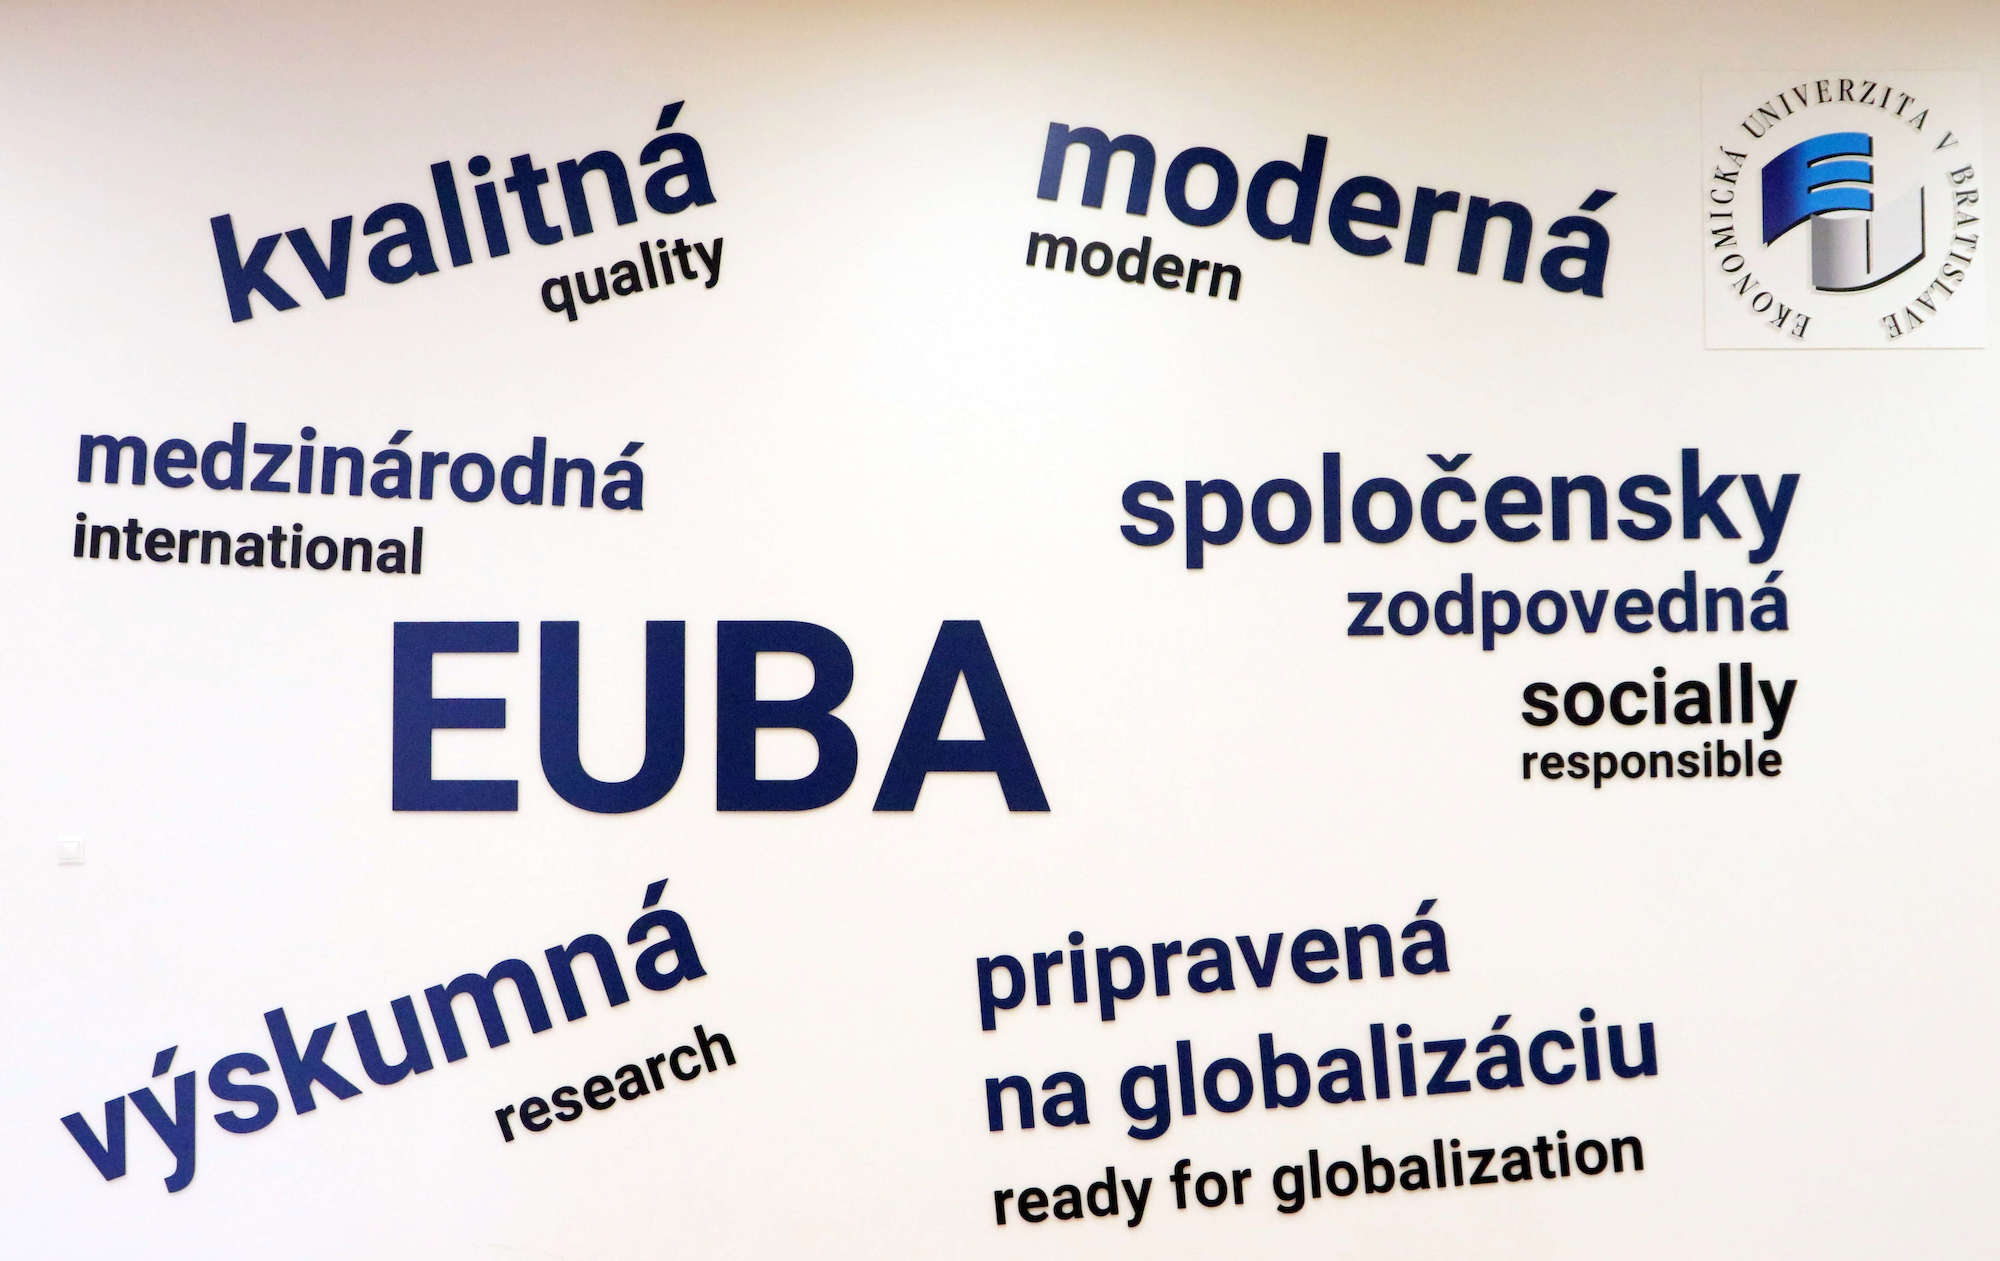 EUBA - kvalitná, moderná, medzinárodná, spoločensky zodpovedná, výskumná a pripravená na globalizáciu